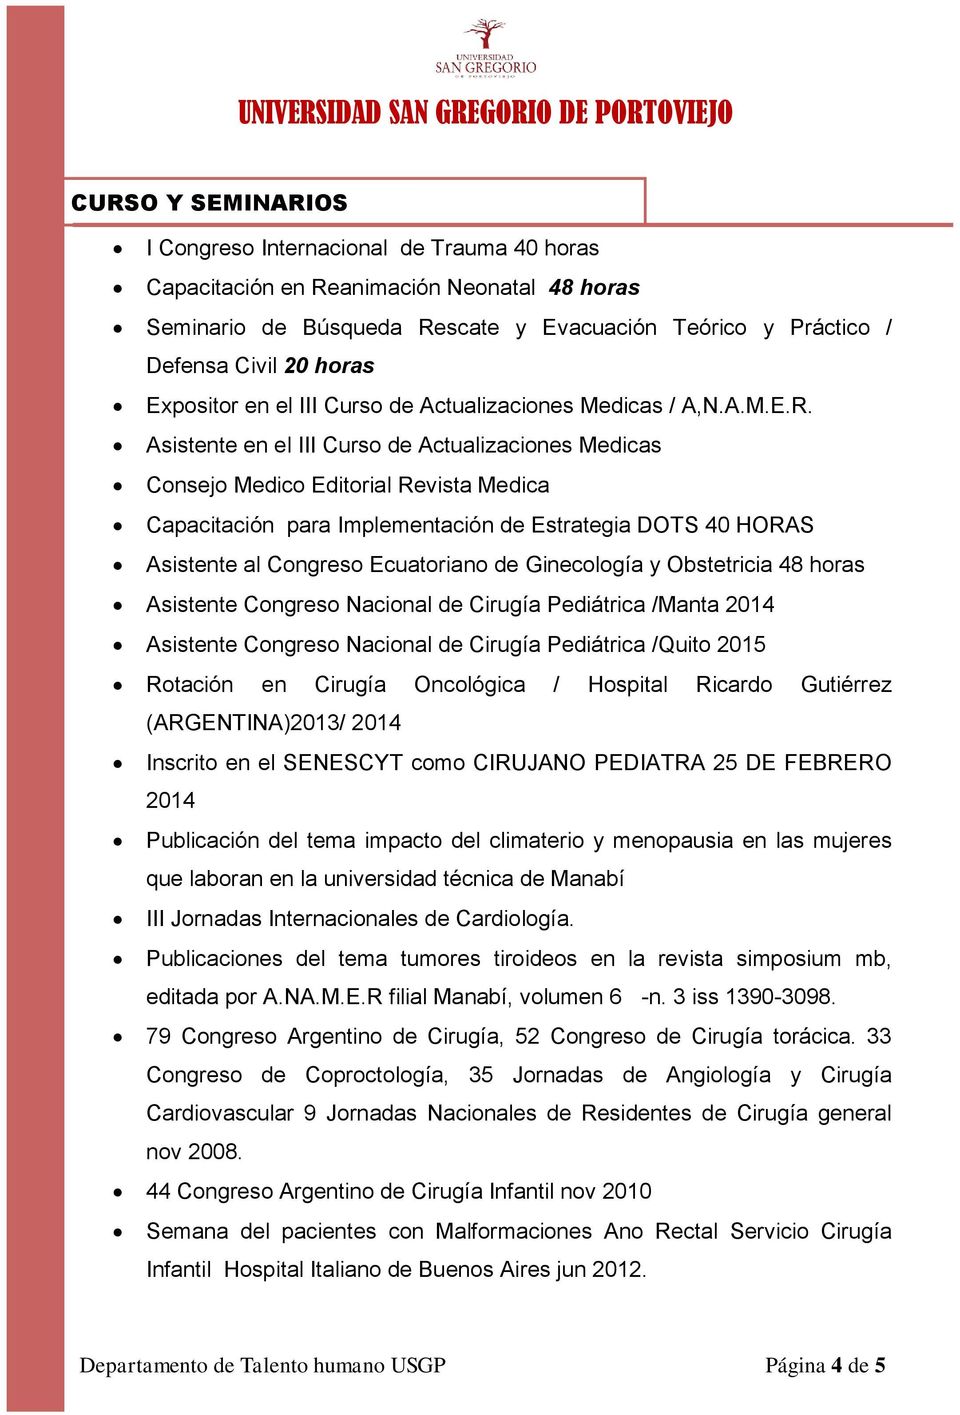 Asistente en el III Curso de Actualizaciones Medicas Consejo Medico Editorial Revista Medica Capacitación para Implementación de Estrategia DOTS 40 HORAS Asistente al Congreso Ecuatoriano de